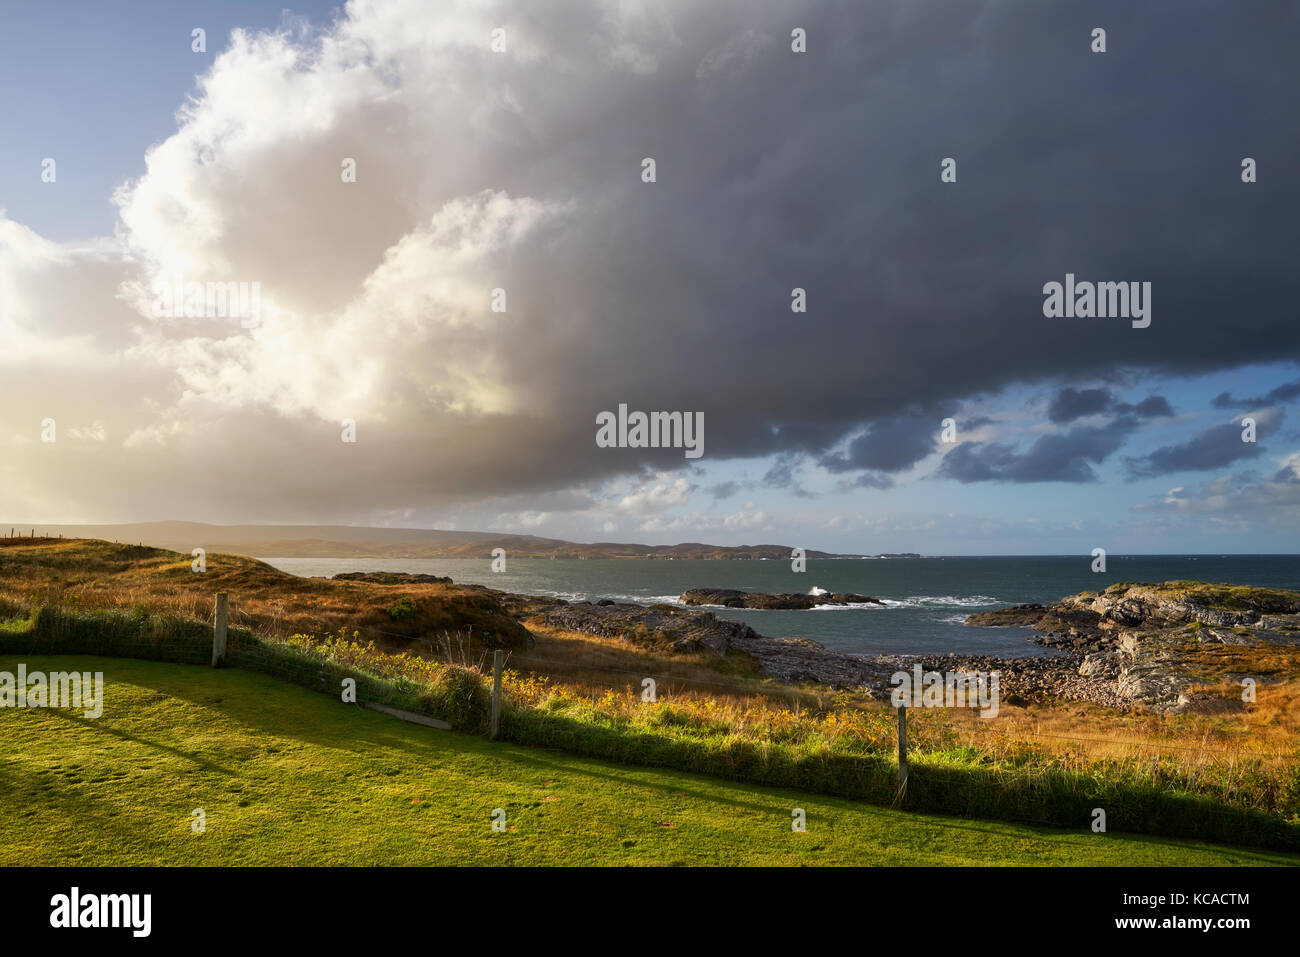 En fin de soirée bien briser des nuages de pluie à Loch Ewe, Highlands, Ecosse, Royaume-Uni. Banque D'Images